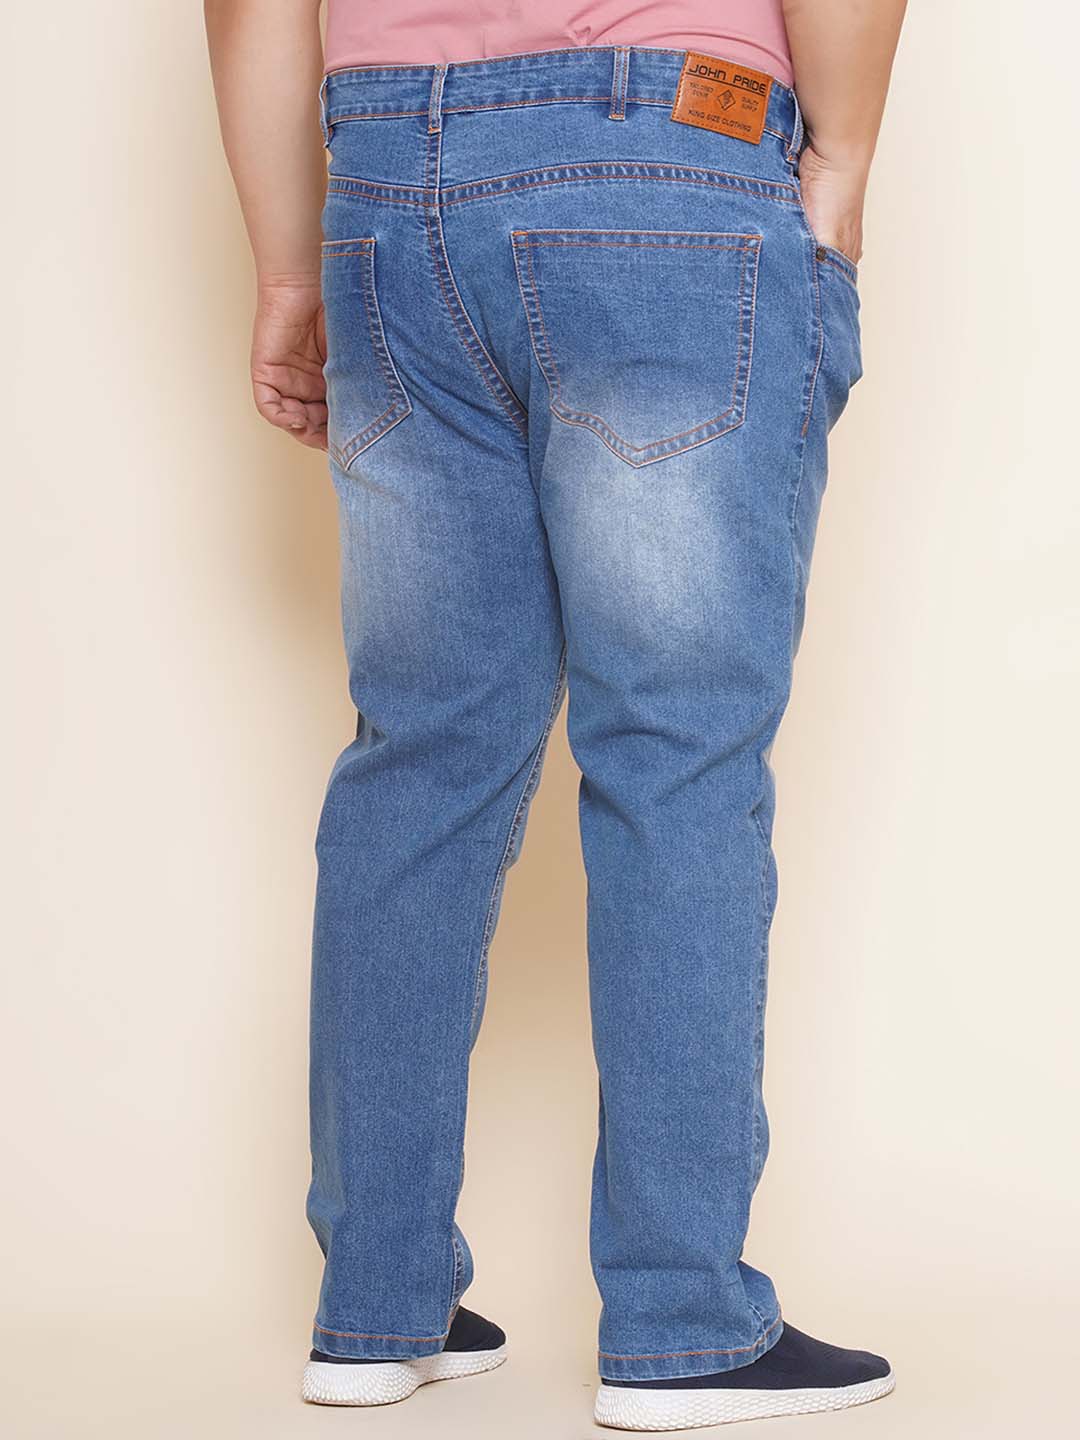 bottomwear/jeans/EJPJ25100/ejpj25100-5.jpg